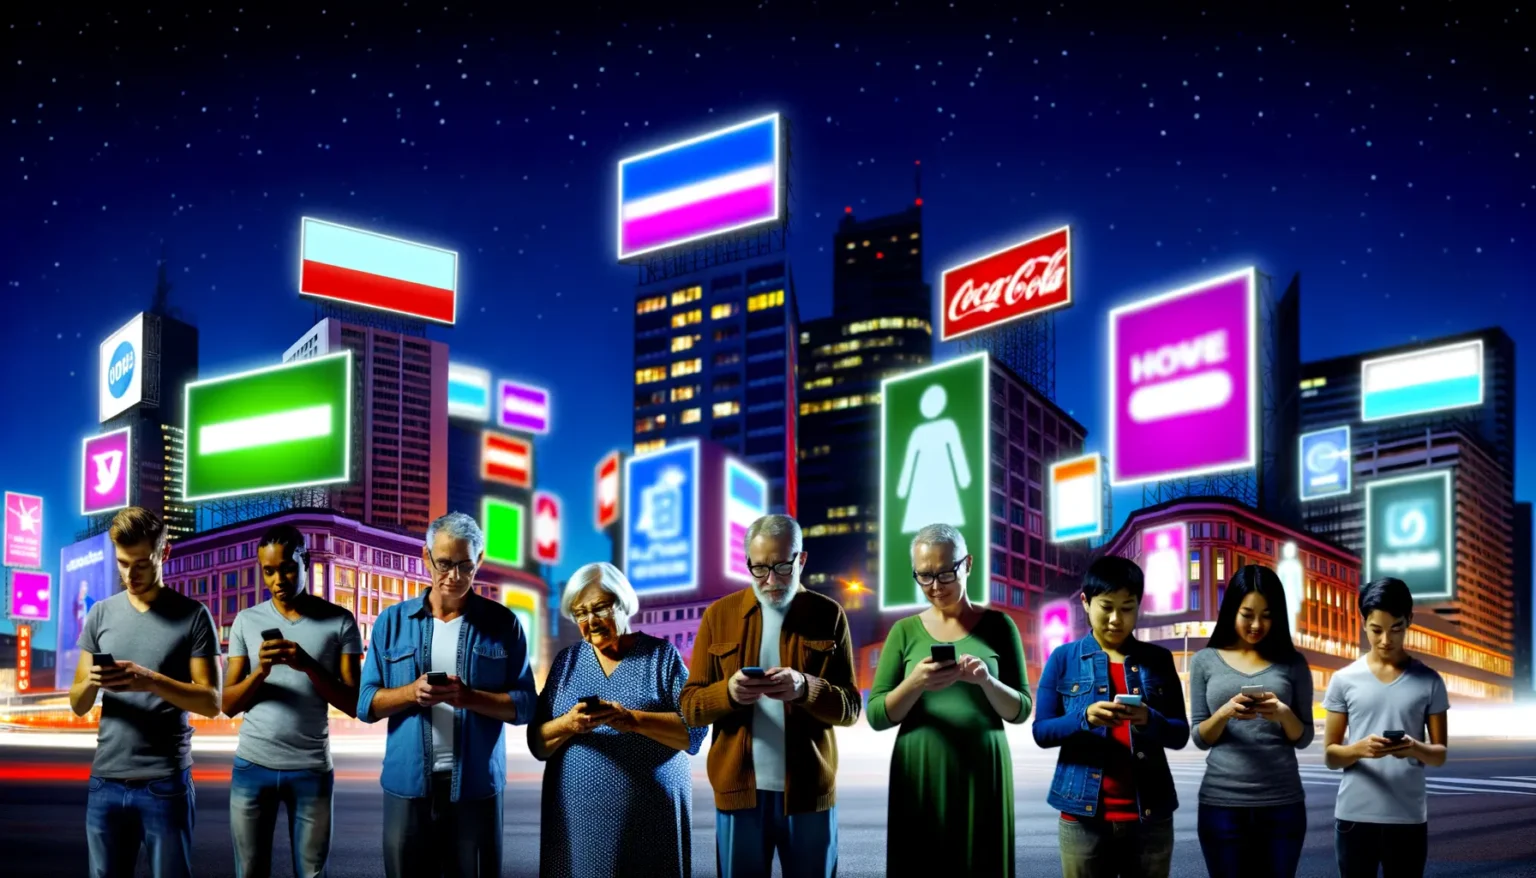 Eine Gruppe verschiedenalteriger Menschen, die auf ihre Smartphones schauen, vor einer städtischen Kulisse bei Nacht mit leuchtenden Werbetafeln und Hochhäusern.